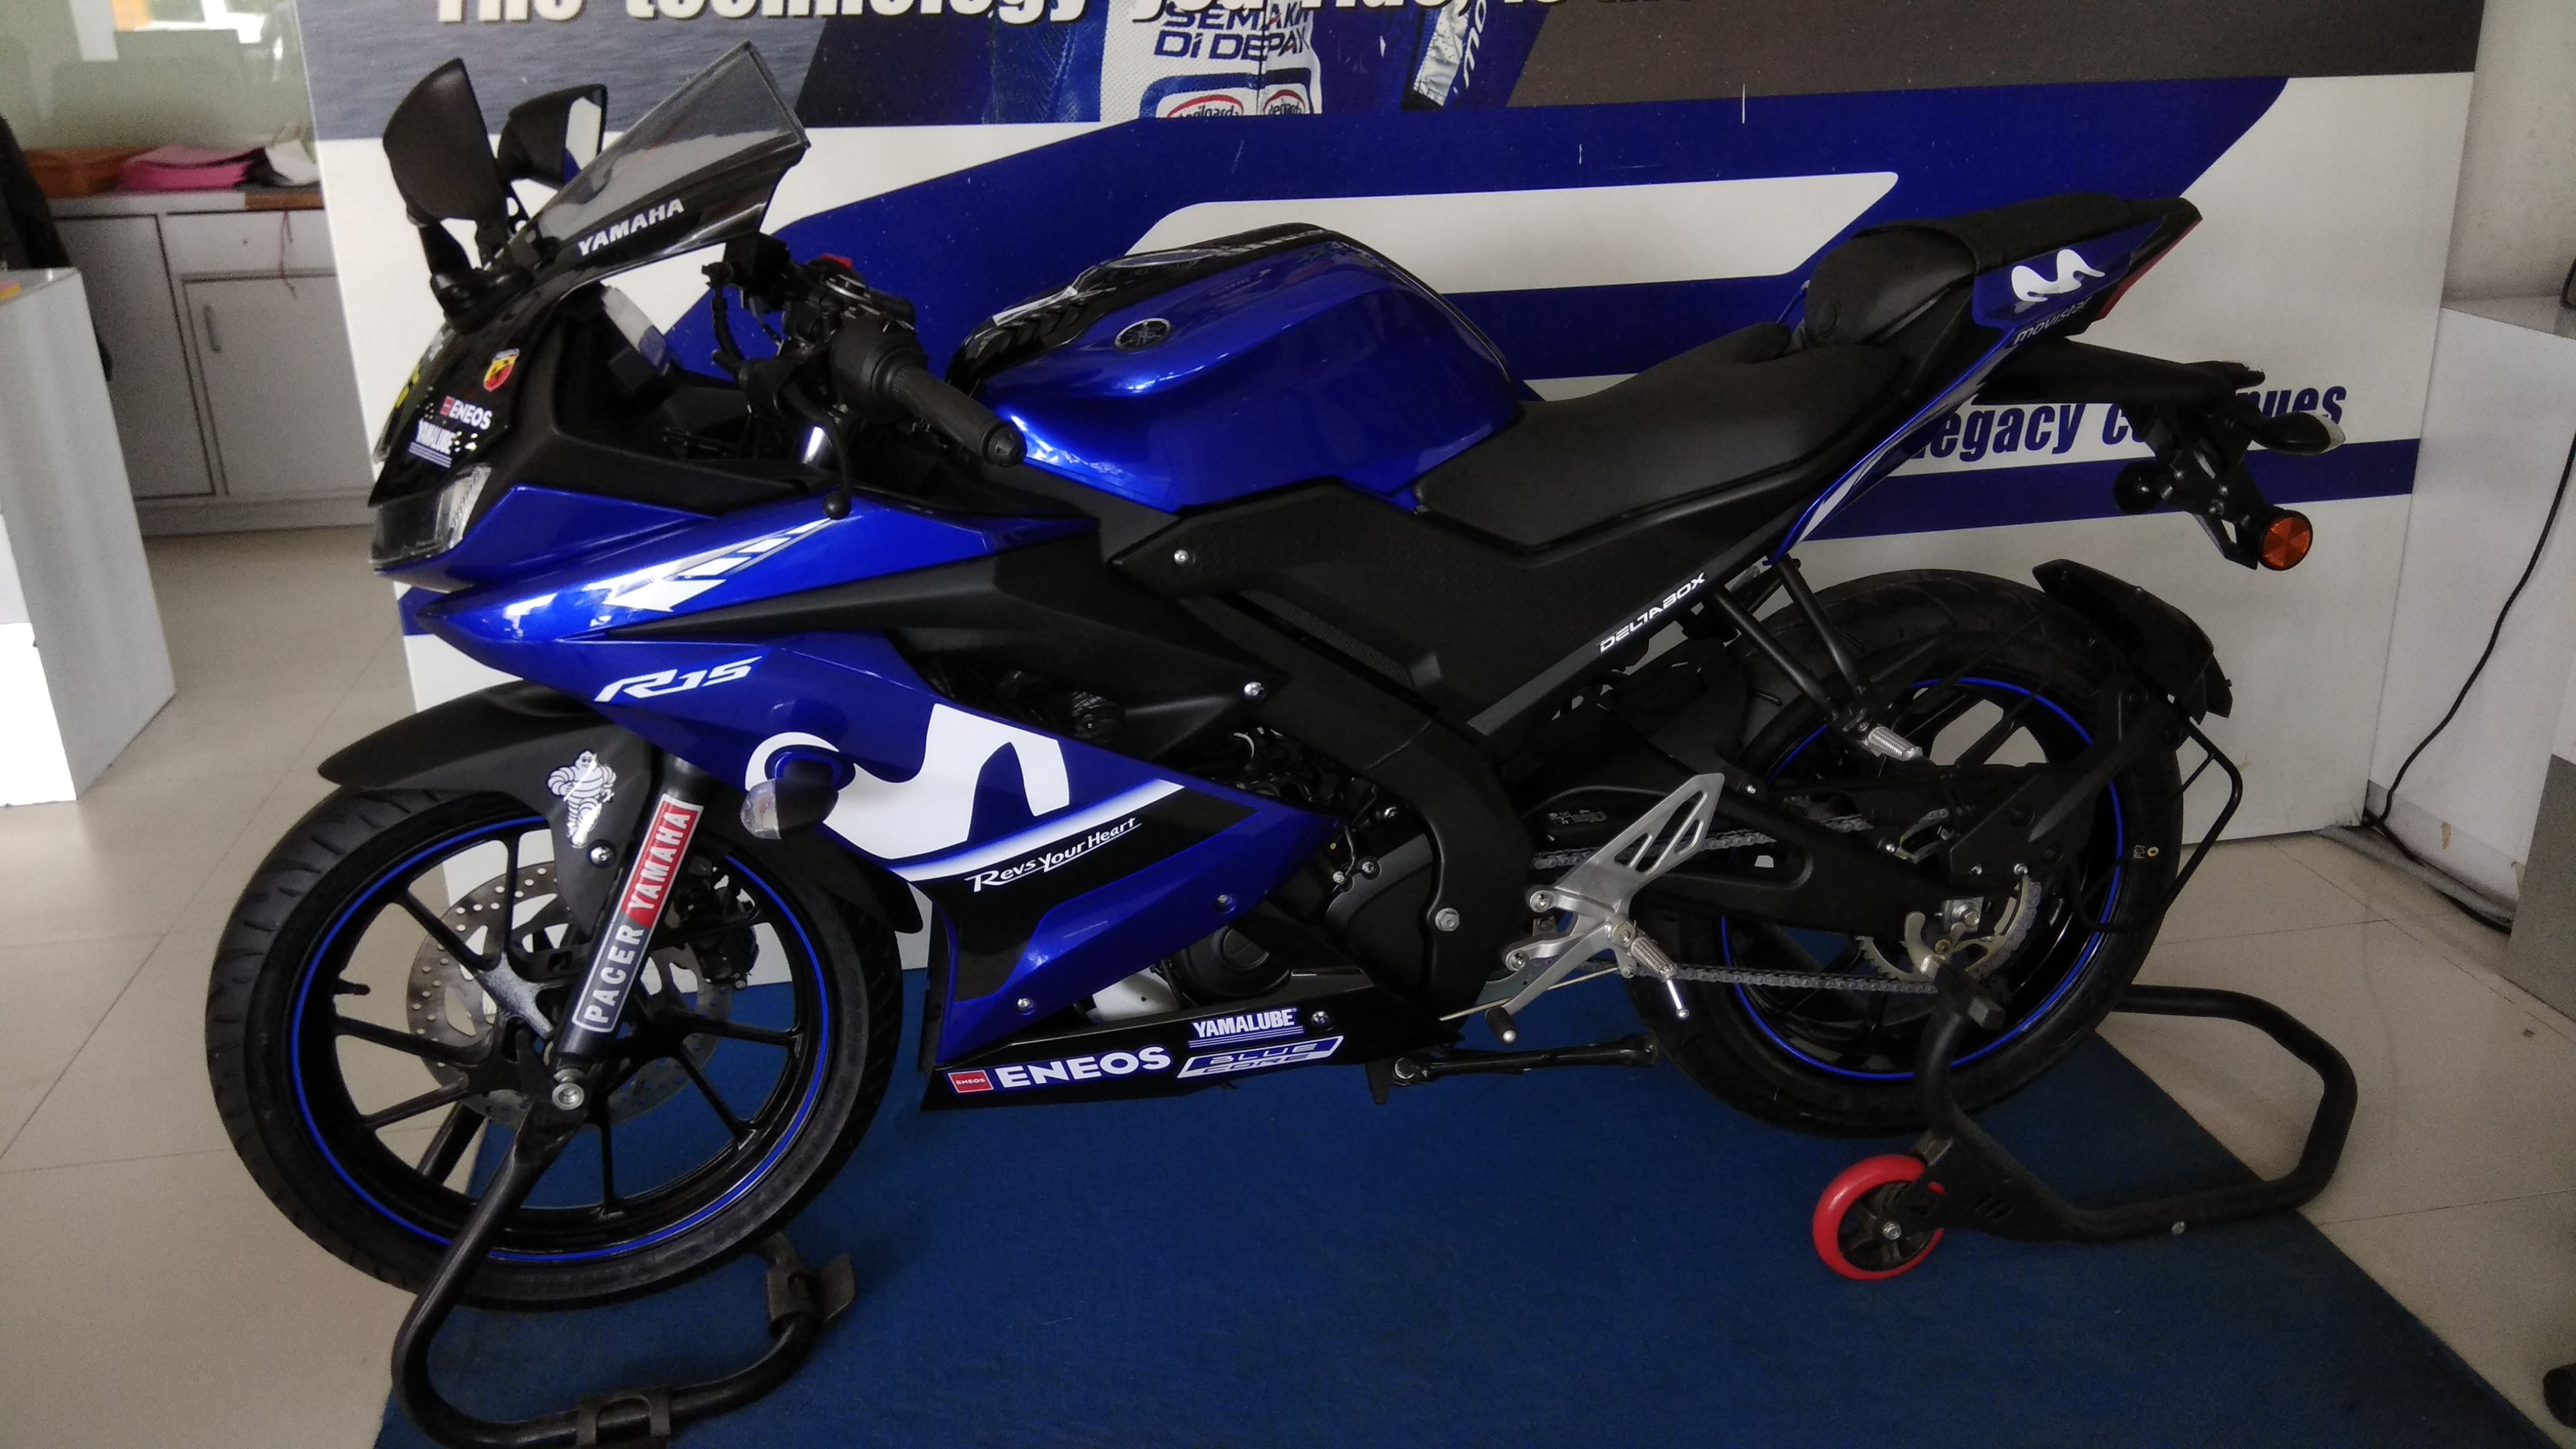 Yamaha R15 V3.0 MotoGP Edition - In 5 Live Images